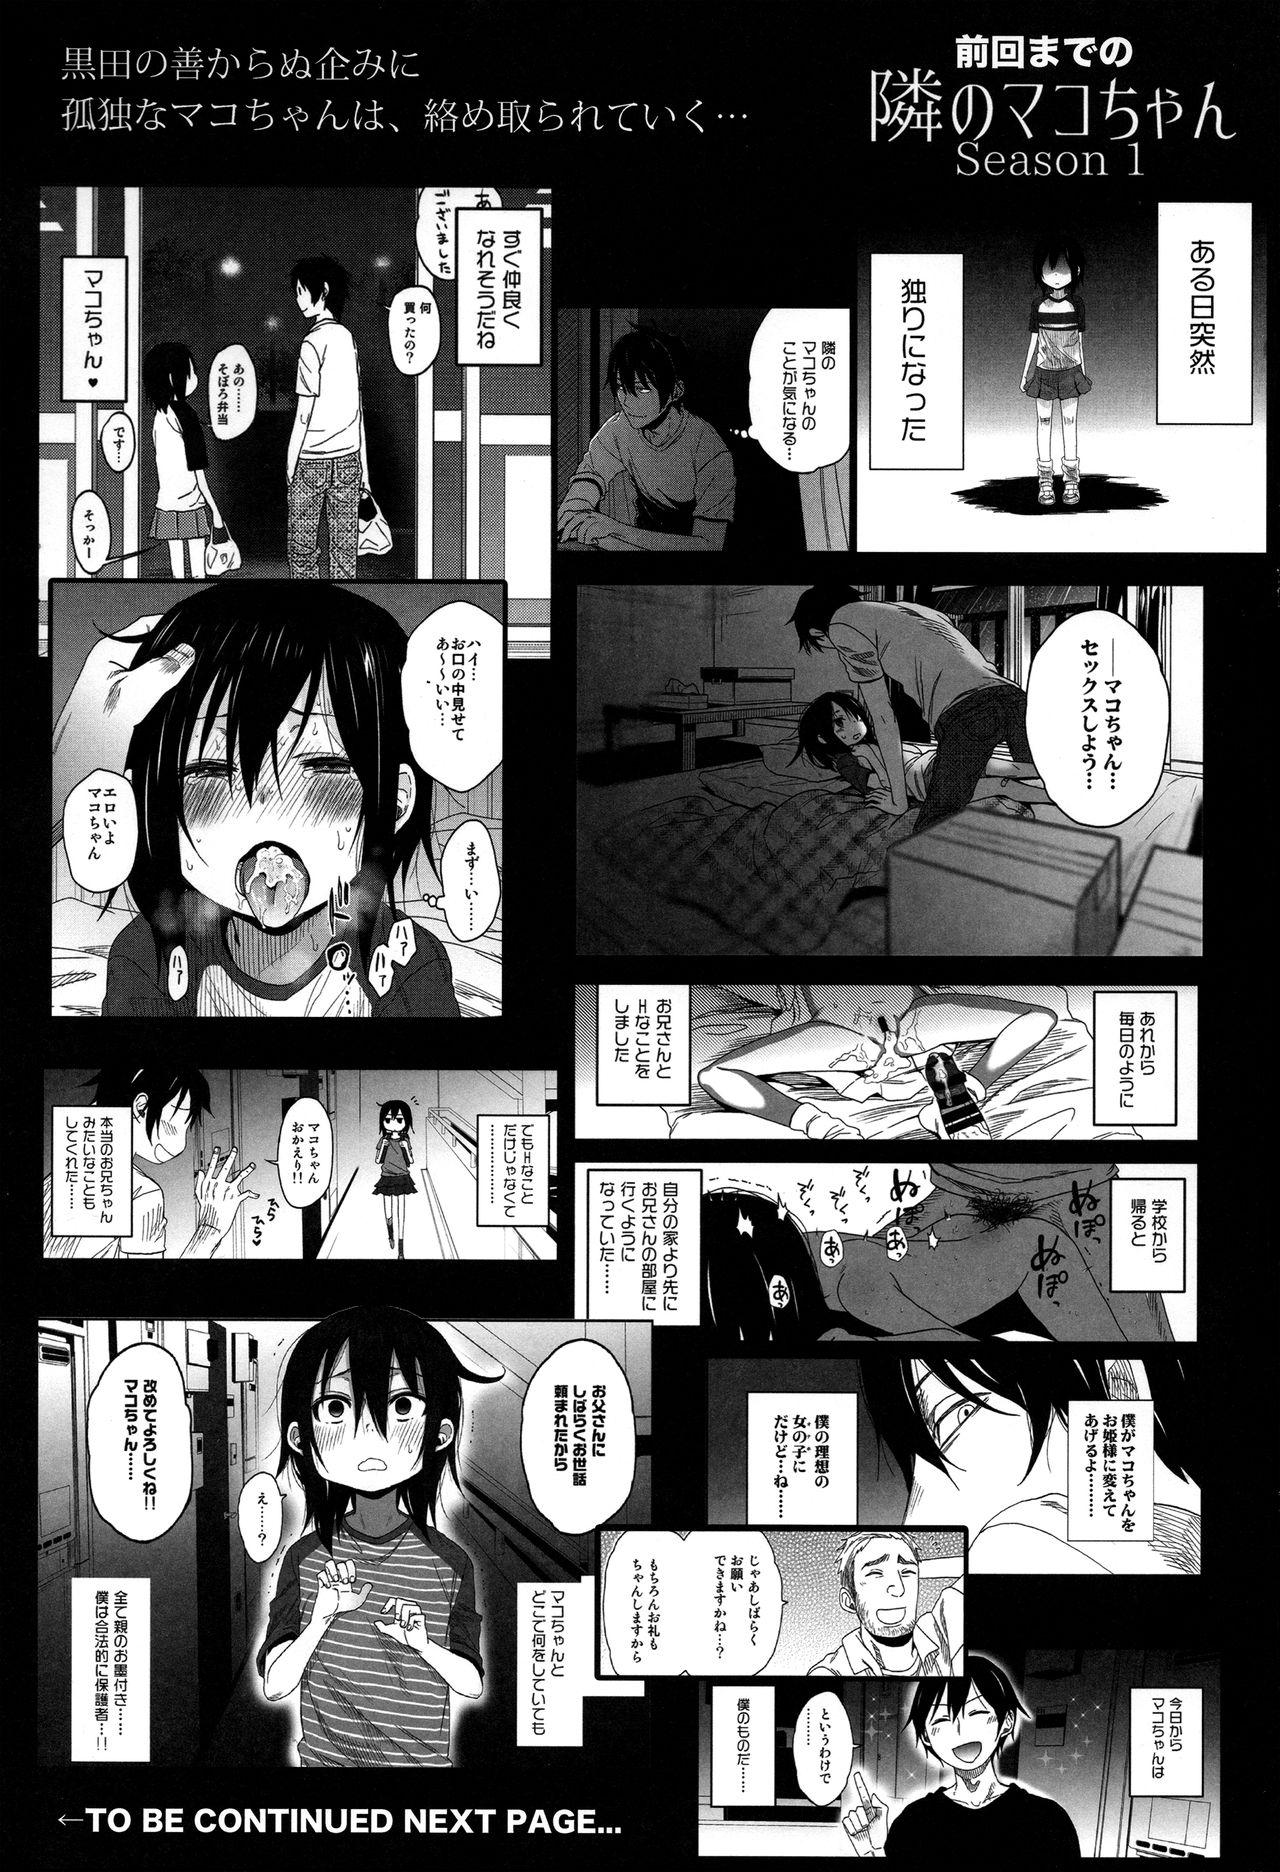 Pussy Tonari no Mako-chan Season 2 Vol. 1 - Original Pick Up - Page 3